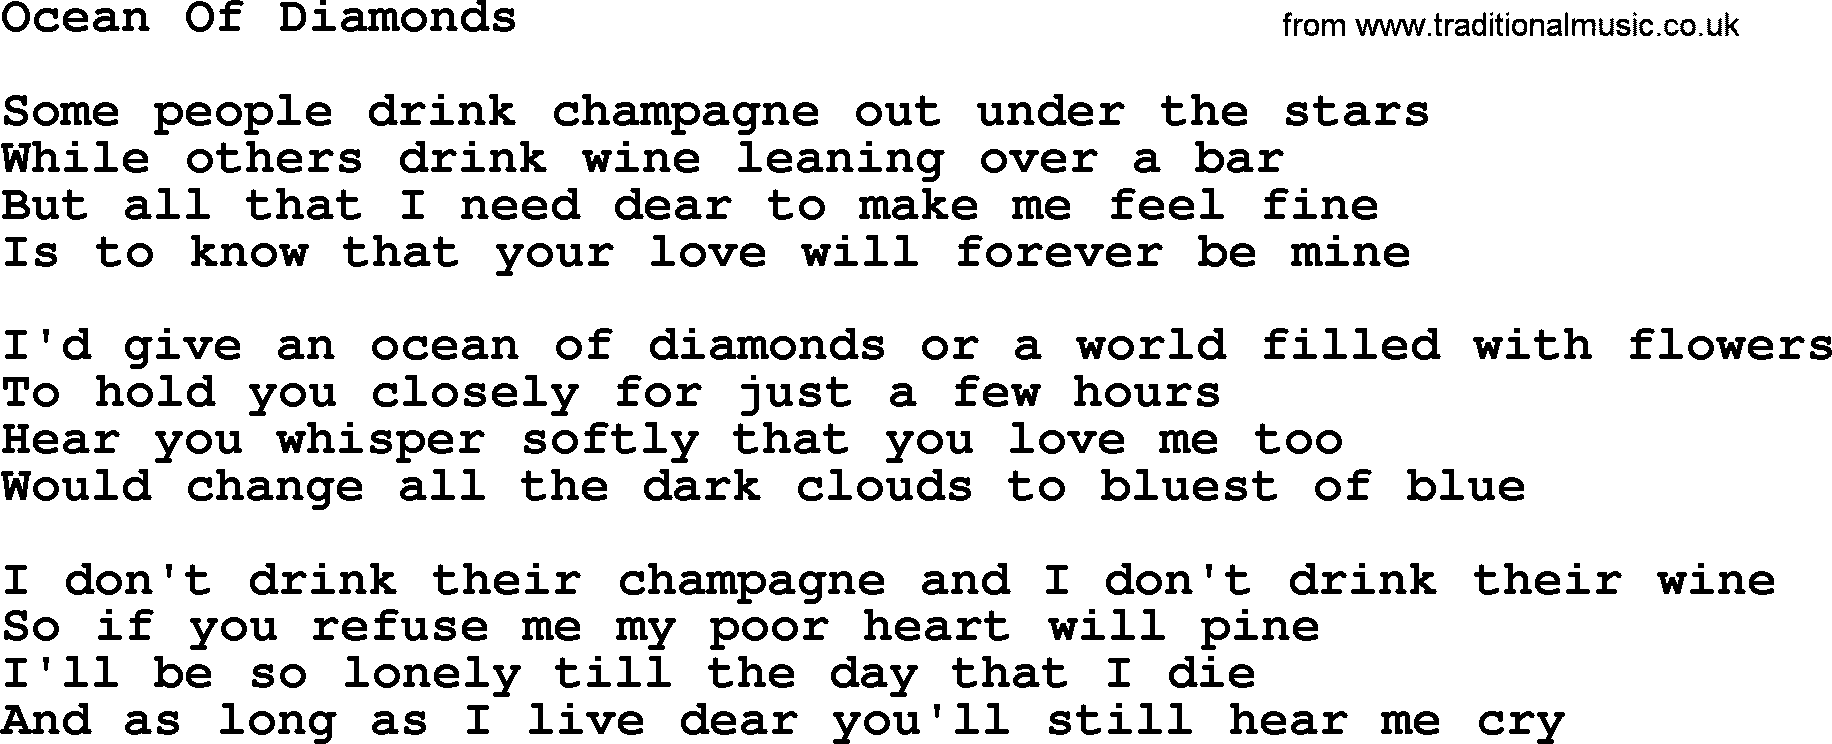 Willie Nelson song: Ocean Of Diamonds lyrics